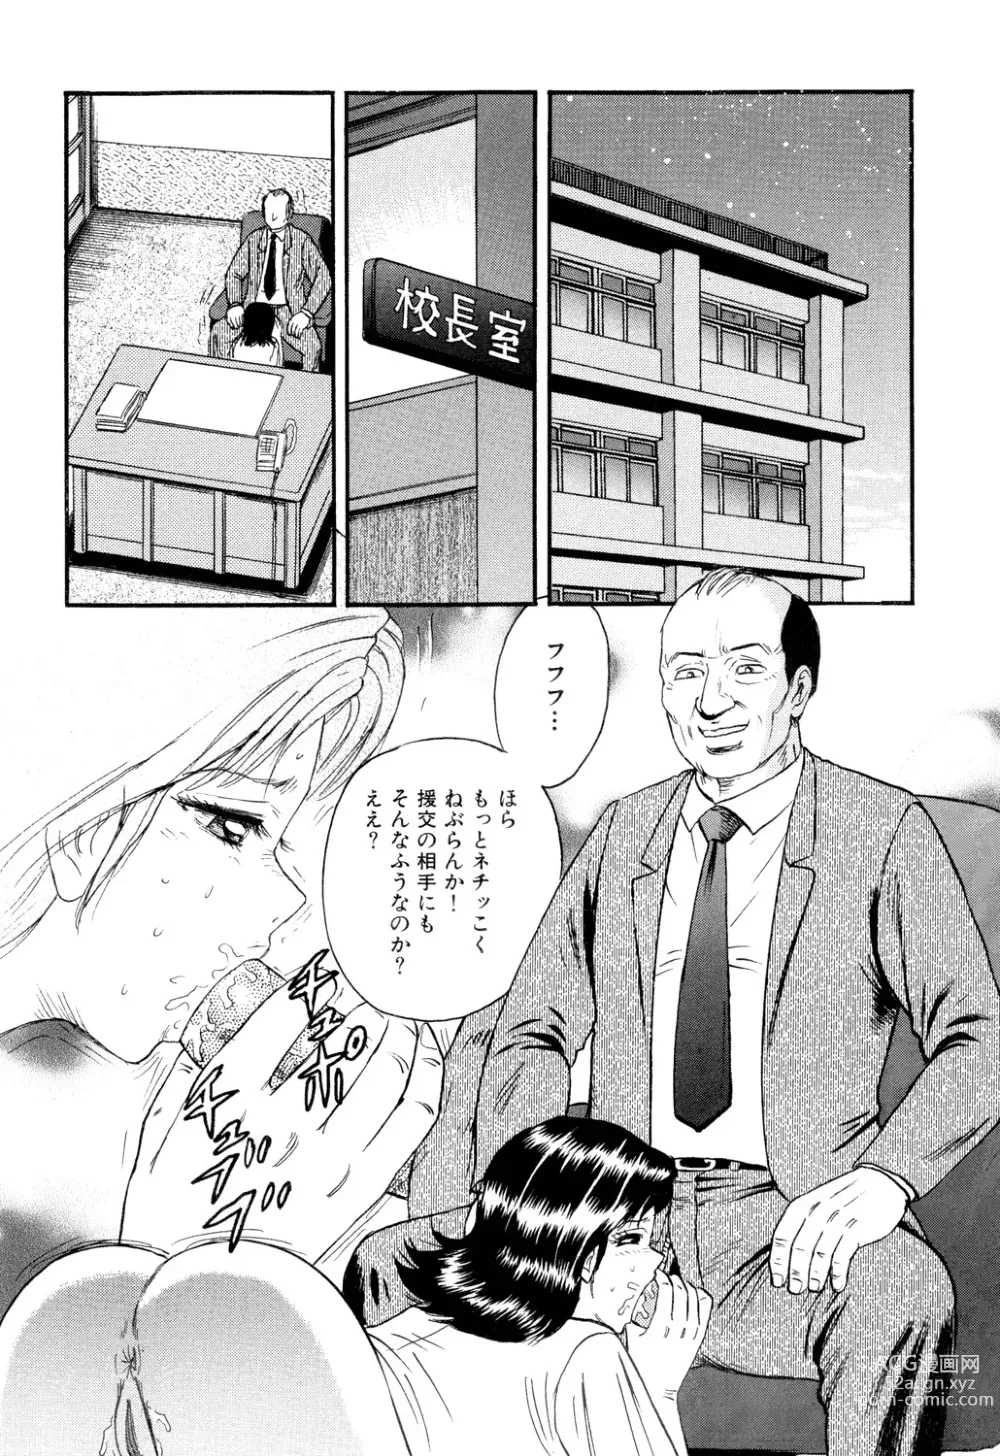 Page 4 of manga Nikuyoku no Utage